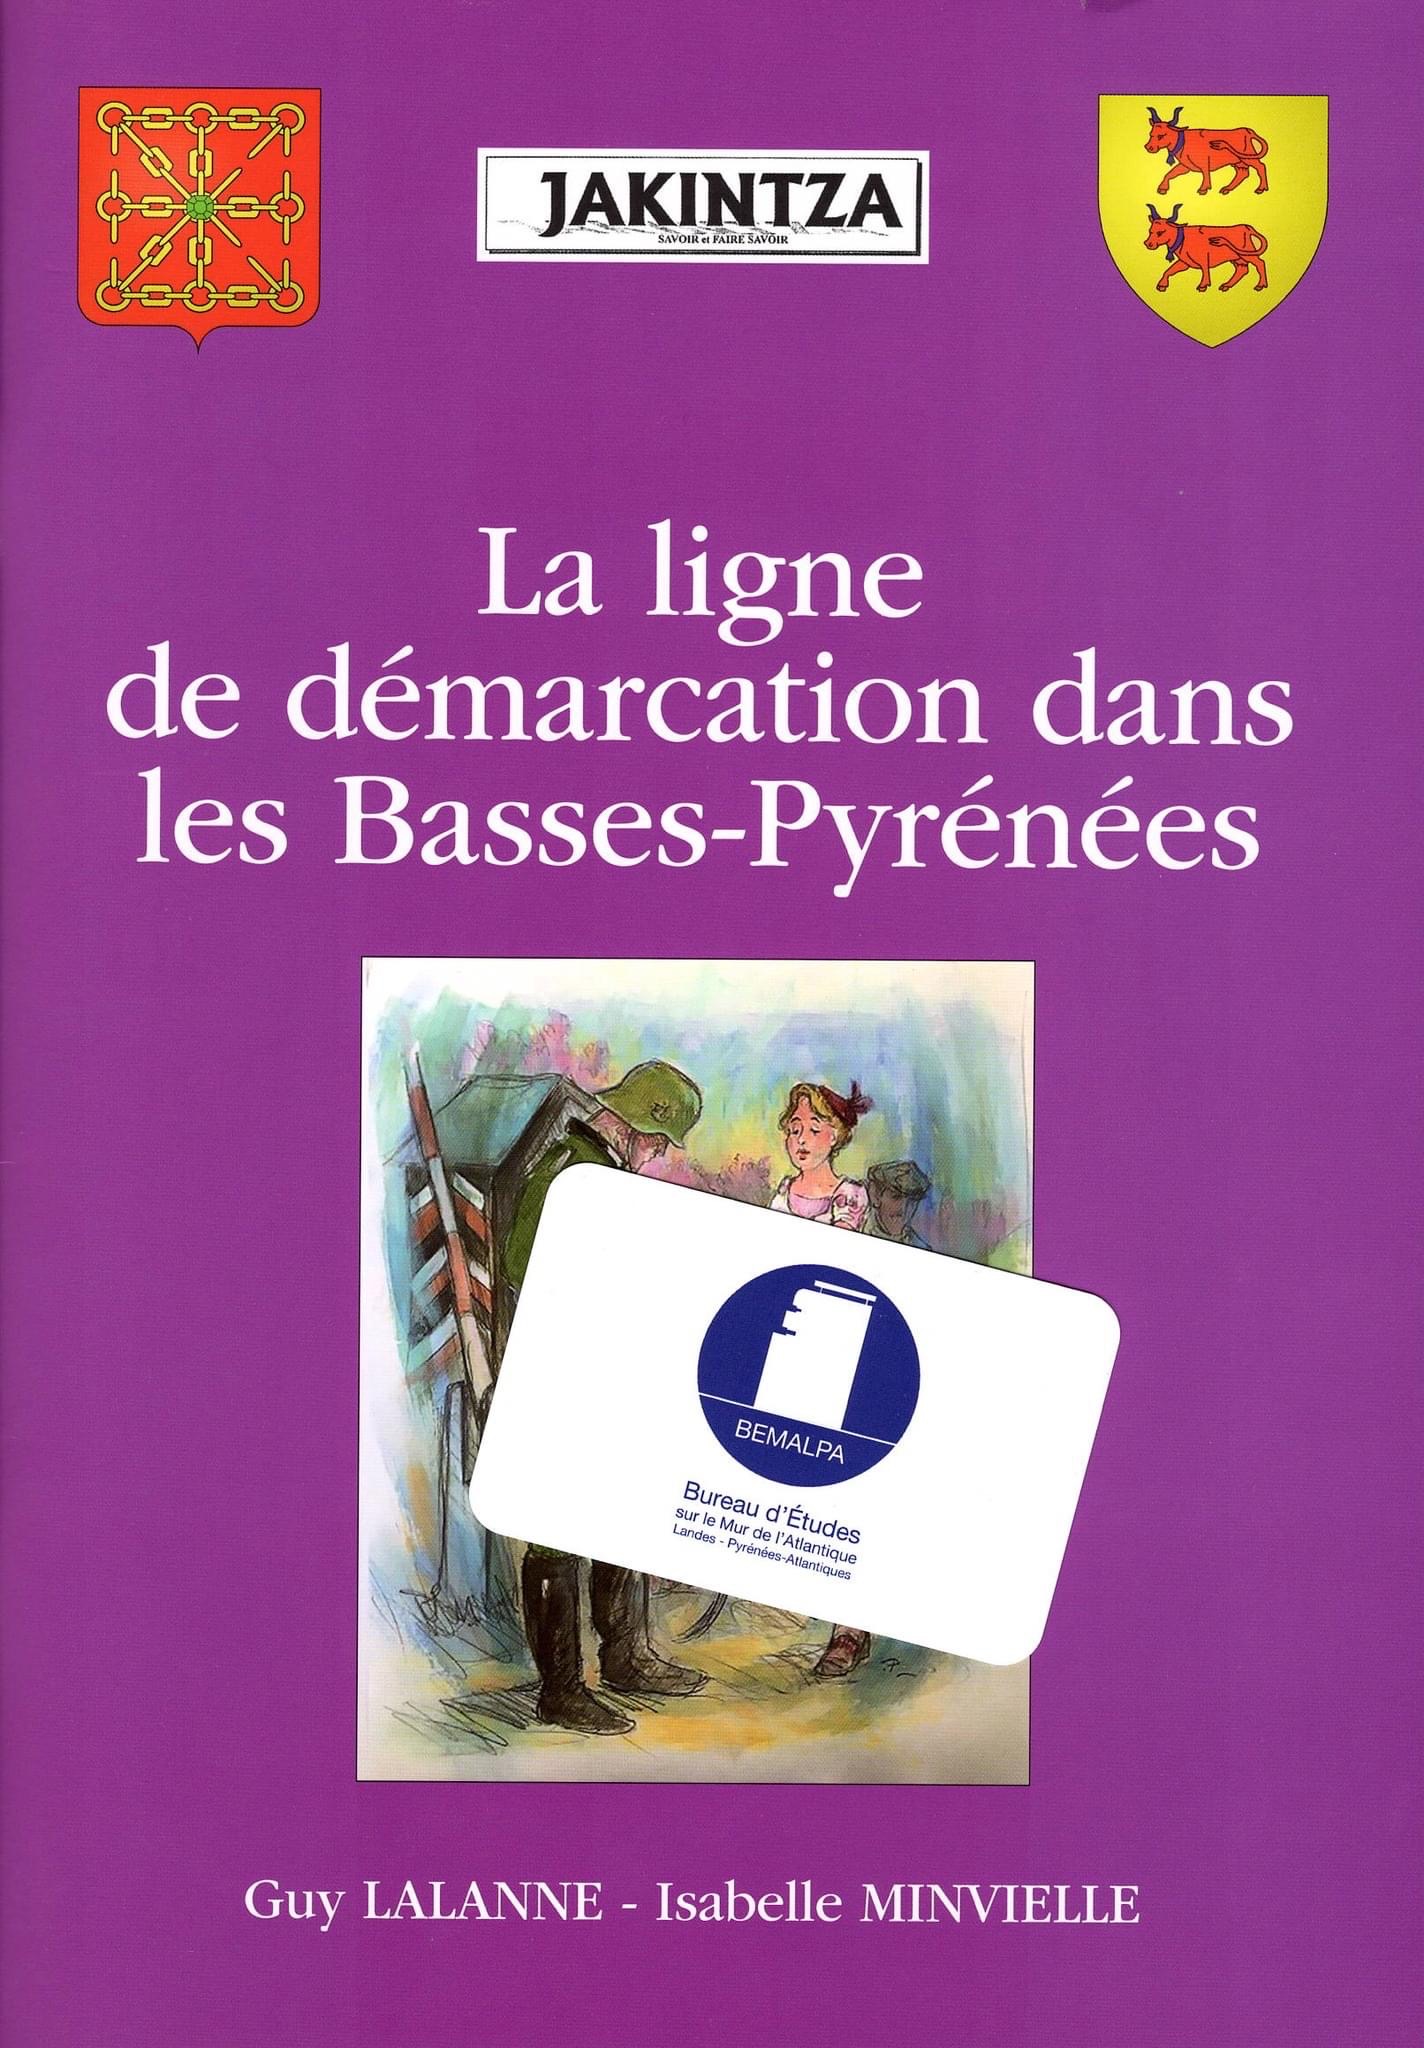 La Ligne de Démarcation dans les Basses-Pyrénées un livre de Guy Lalanne etIsabelle Minvielle